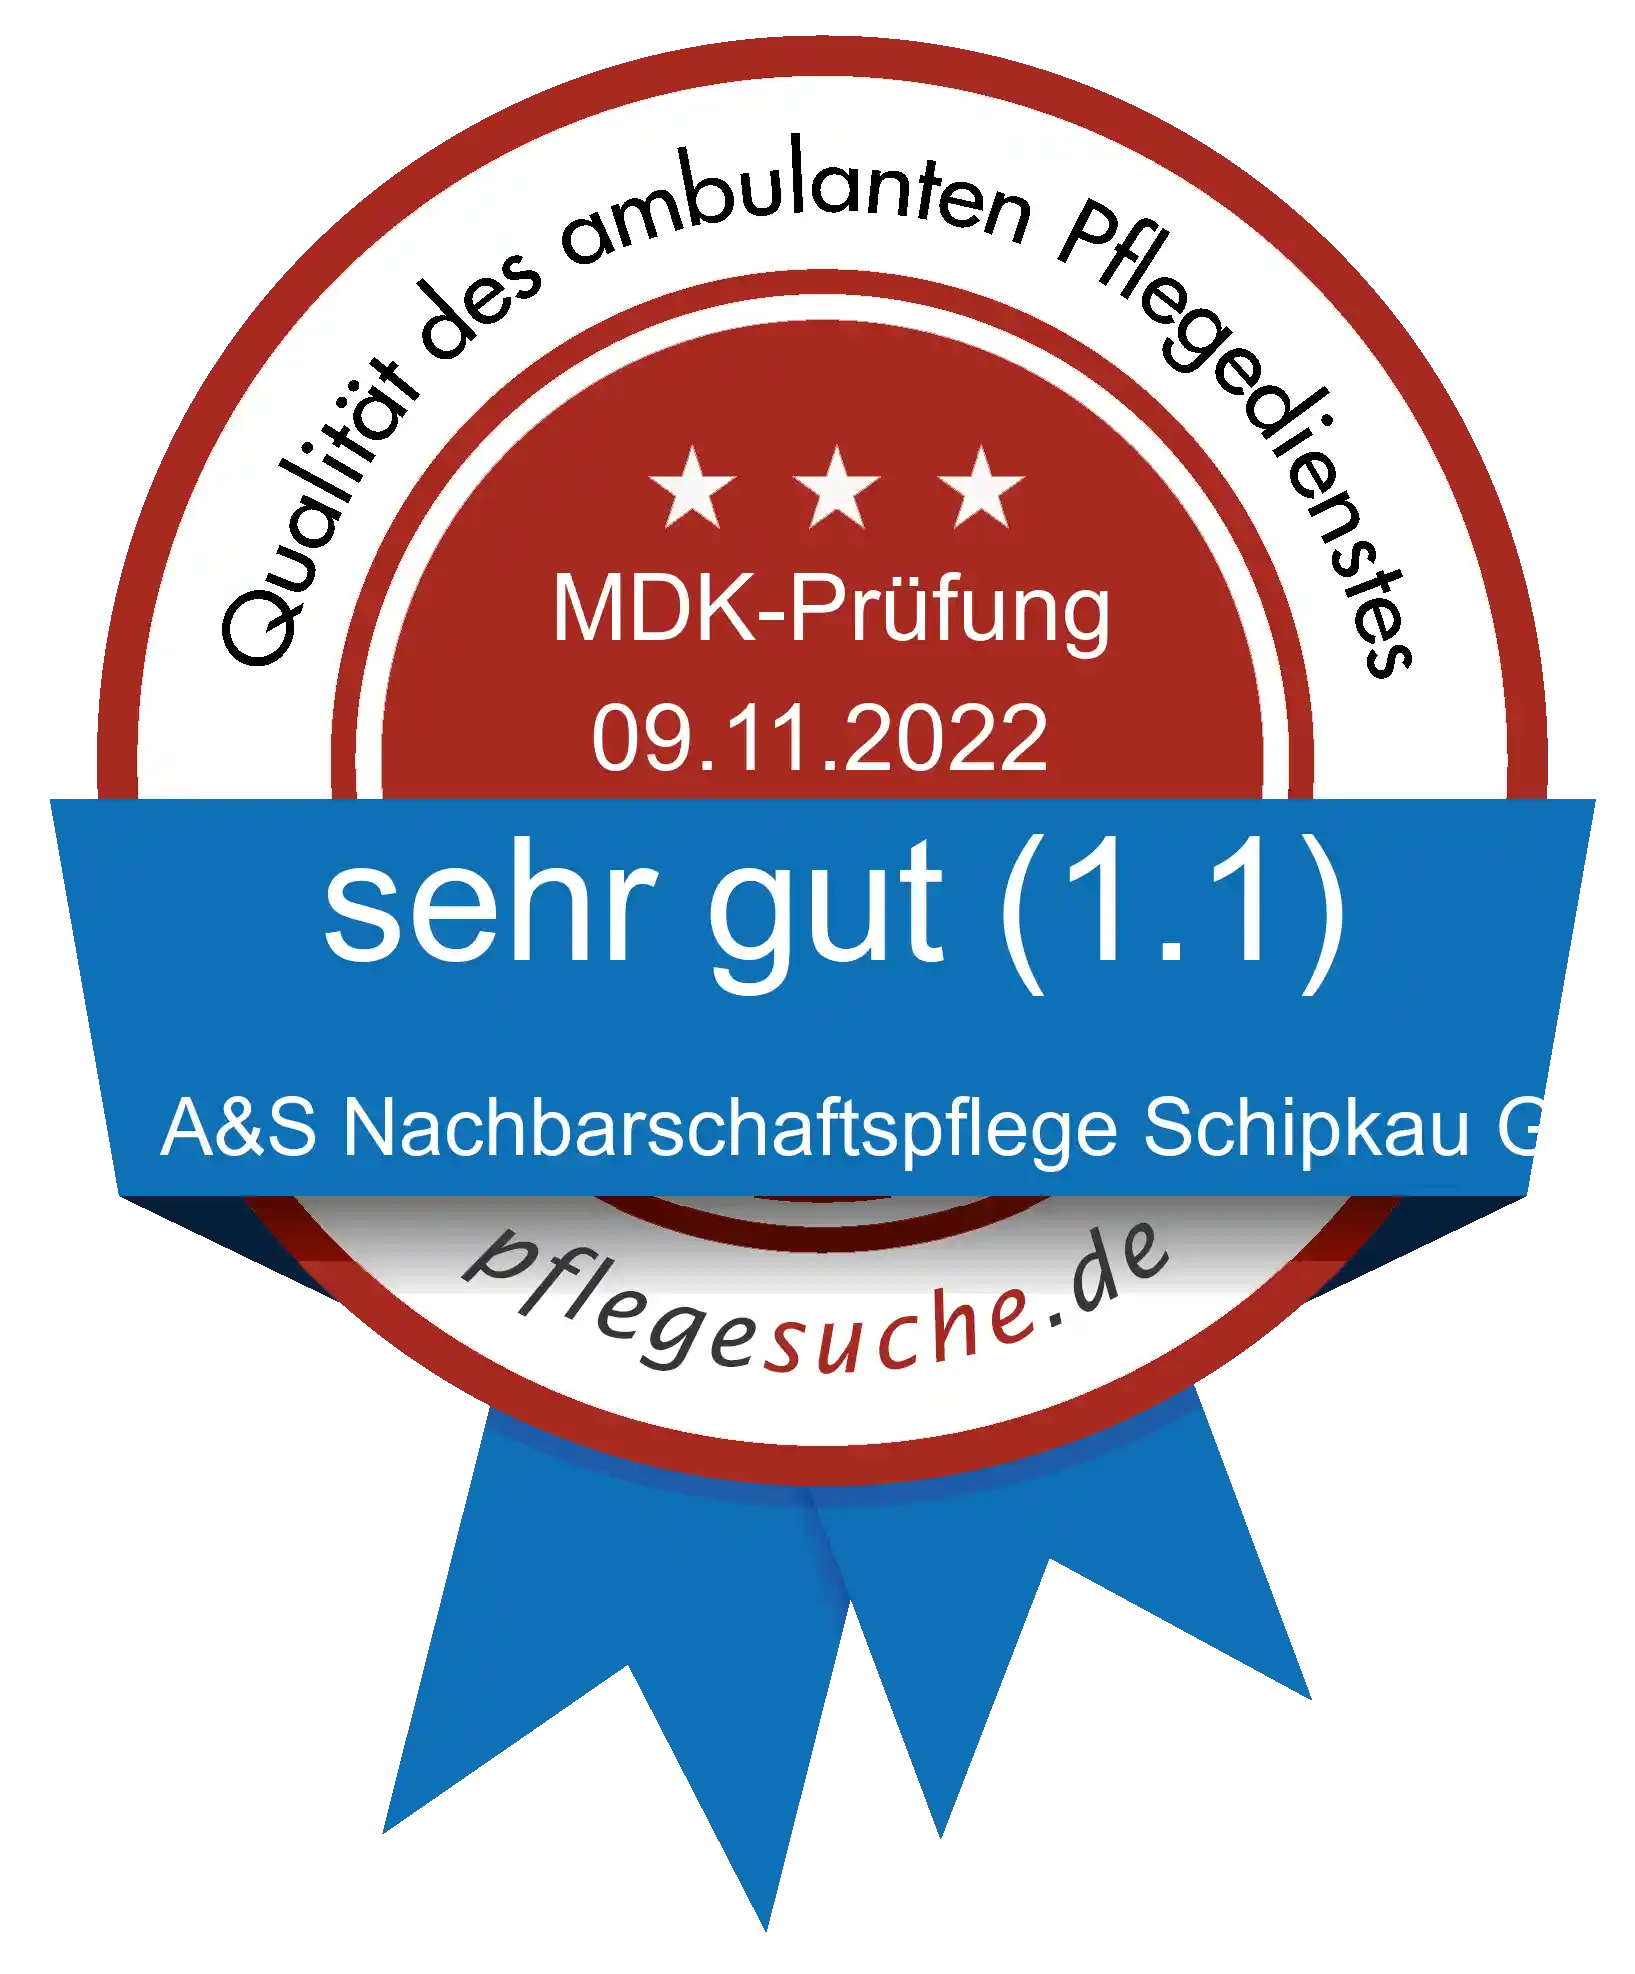 Siegel Benotung A&S Nachbarschaftspflege Schipkau GmbH